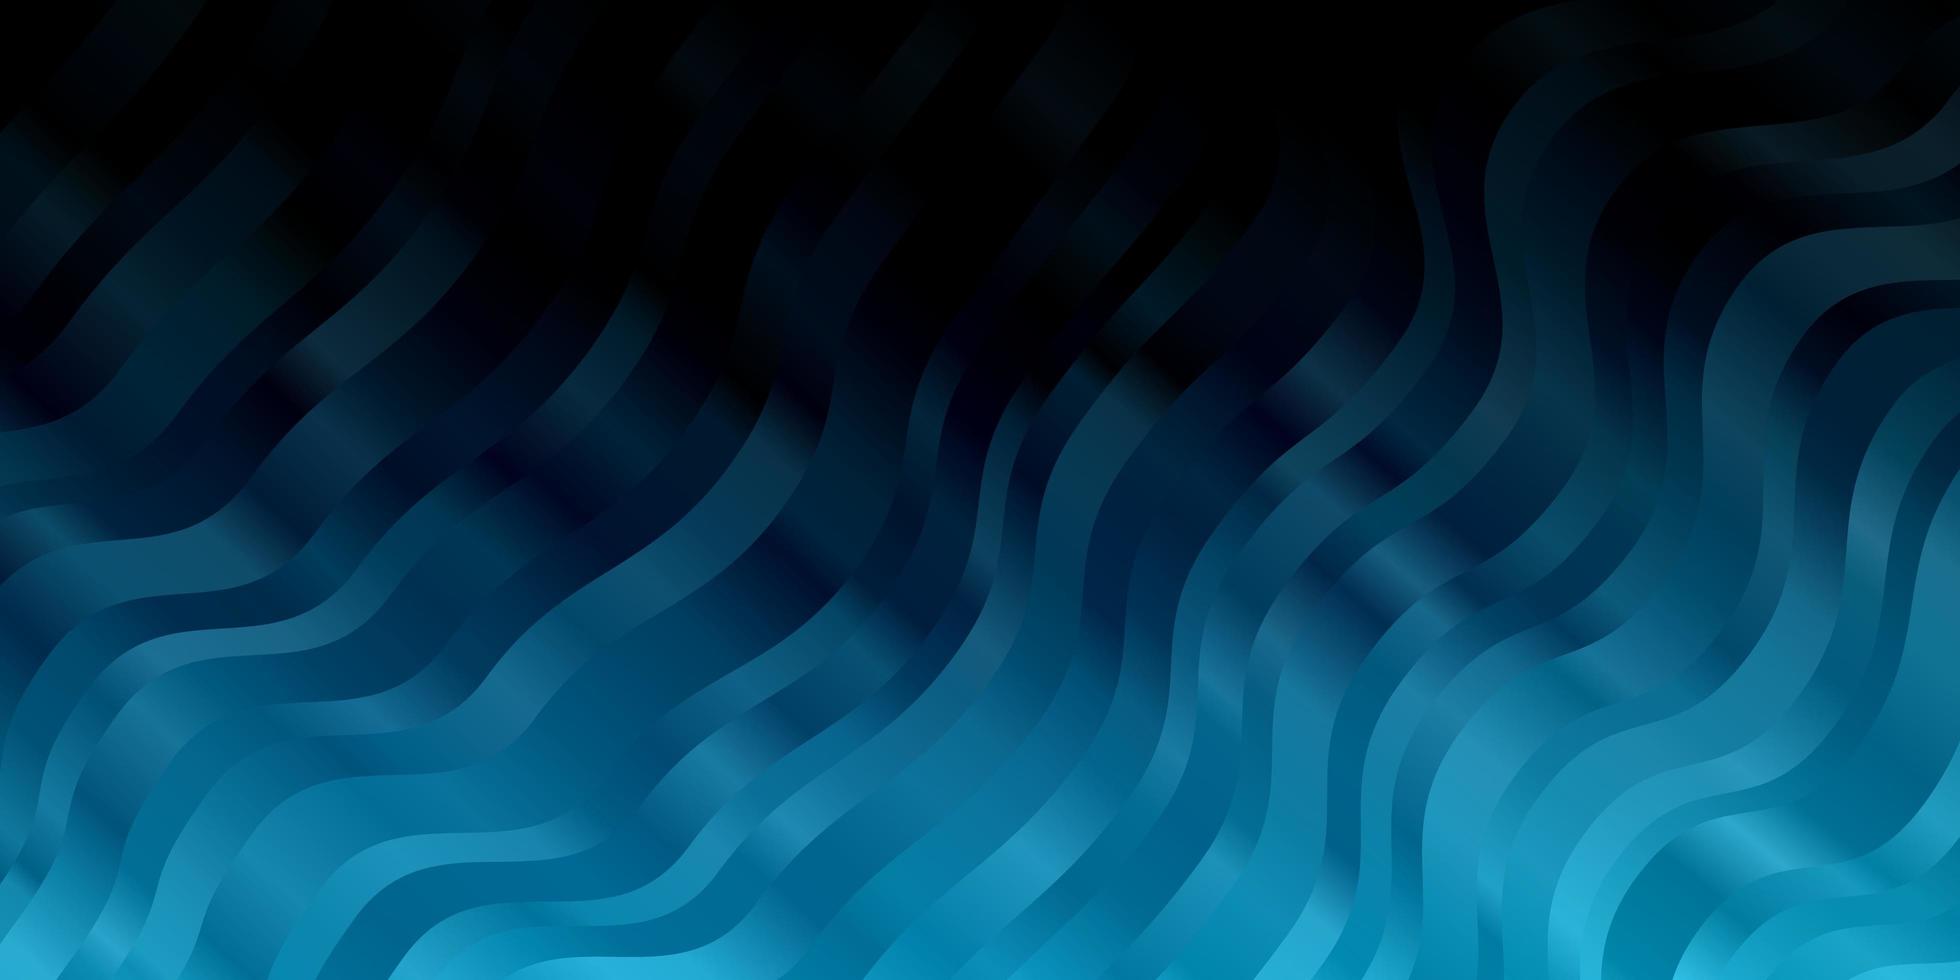 mörkblå vektormönster med sneda linjer vektor